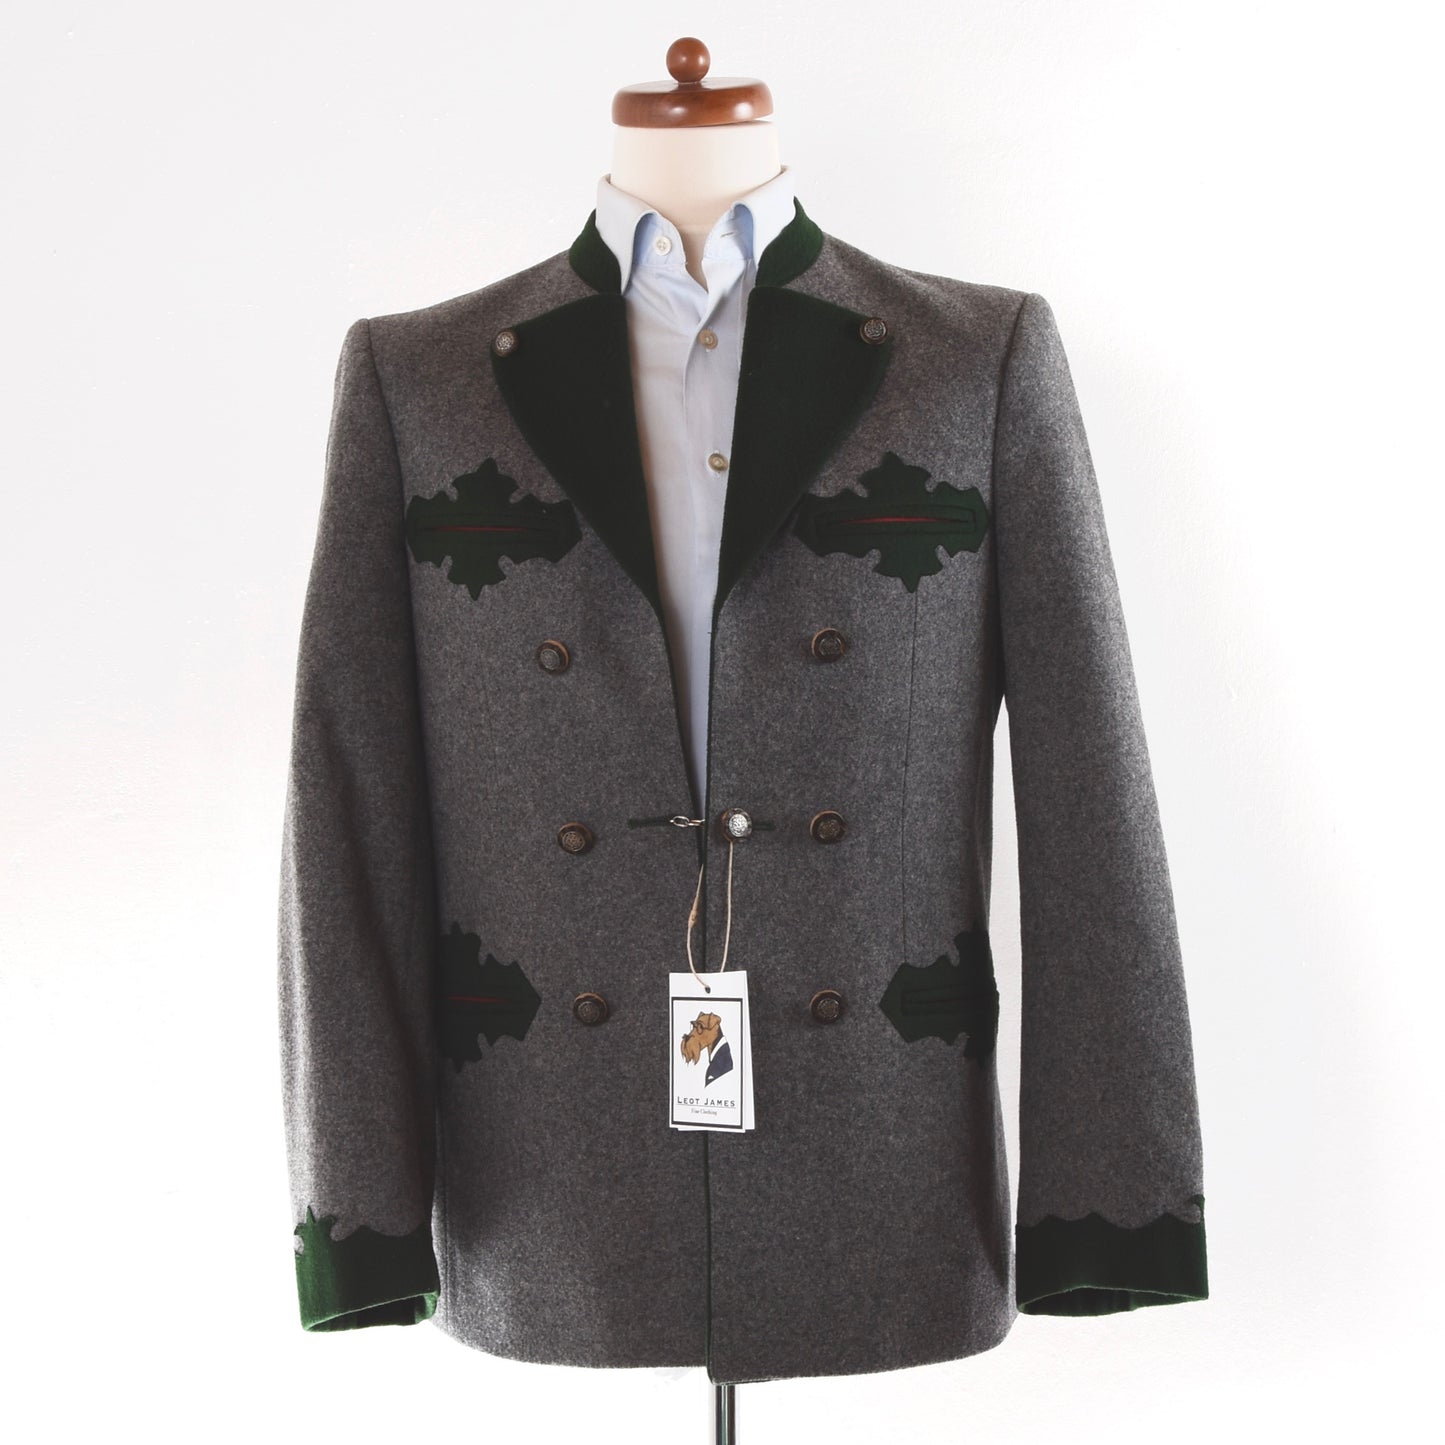 Pisch Touring Loden Steiereranzug Suit Size 50 - Grey